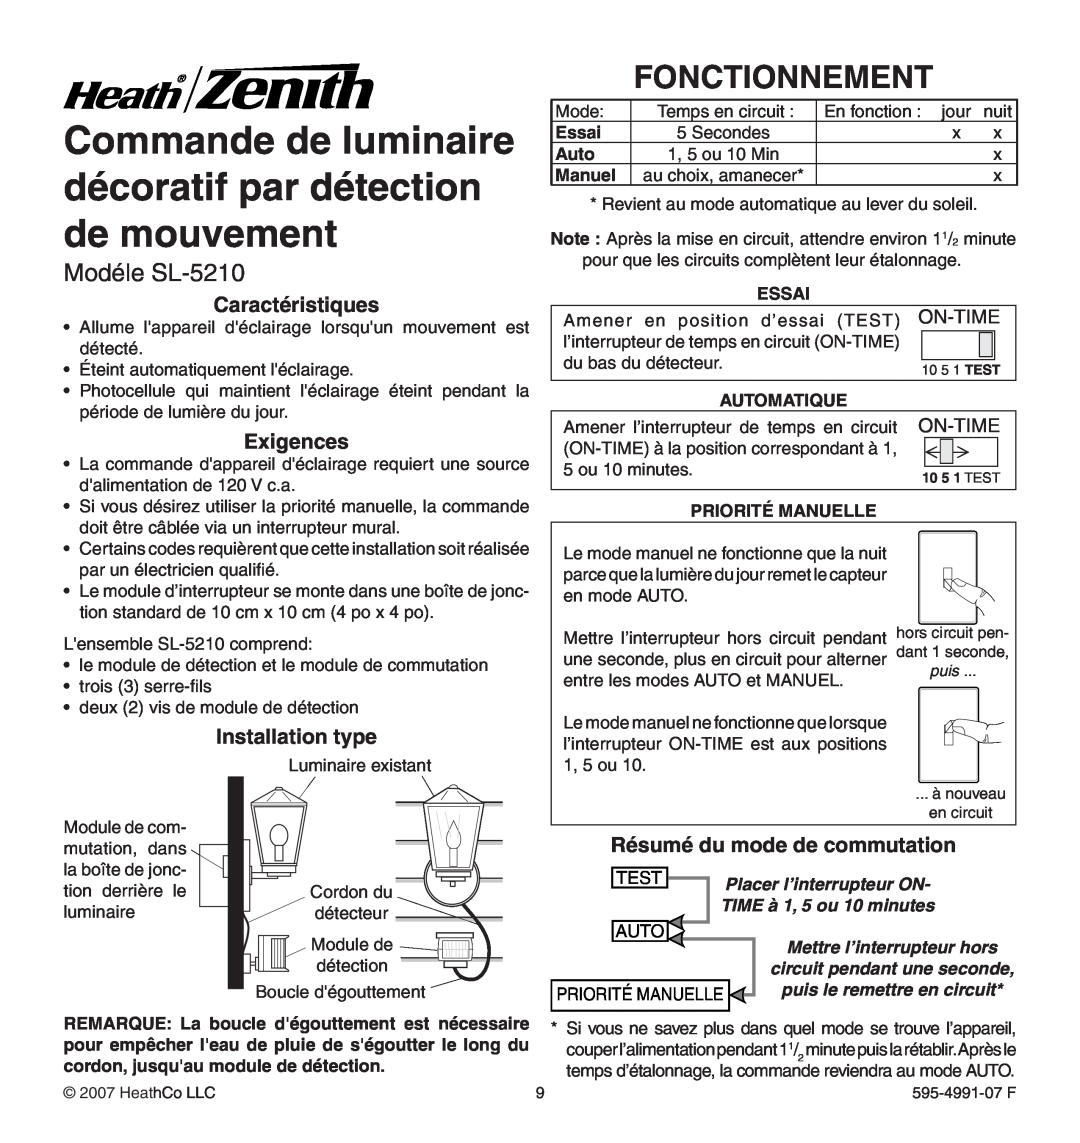 Heath Zenith Fonctionnement, Modéle SL-5210, Caractéristiques, Exigences, Installation type, Essai, Auto, Manuel, Test 